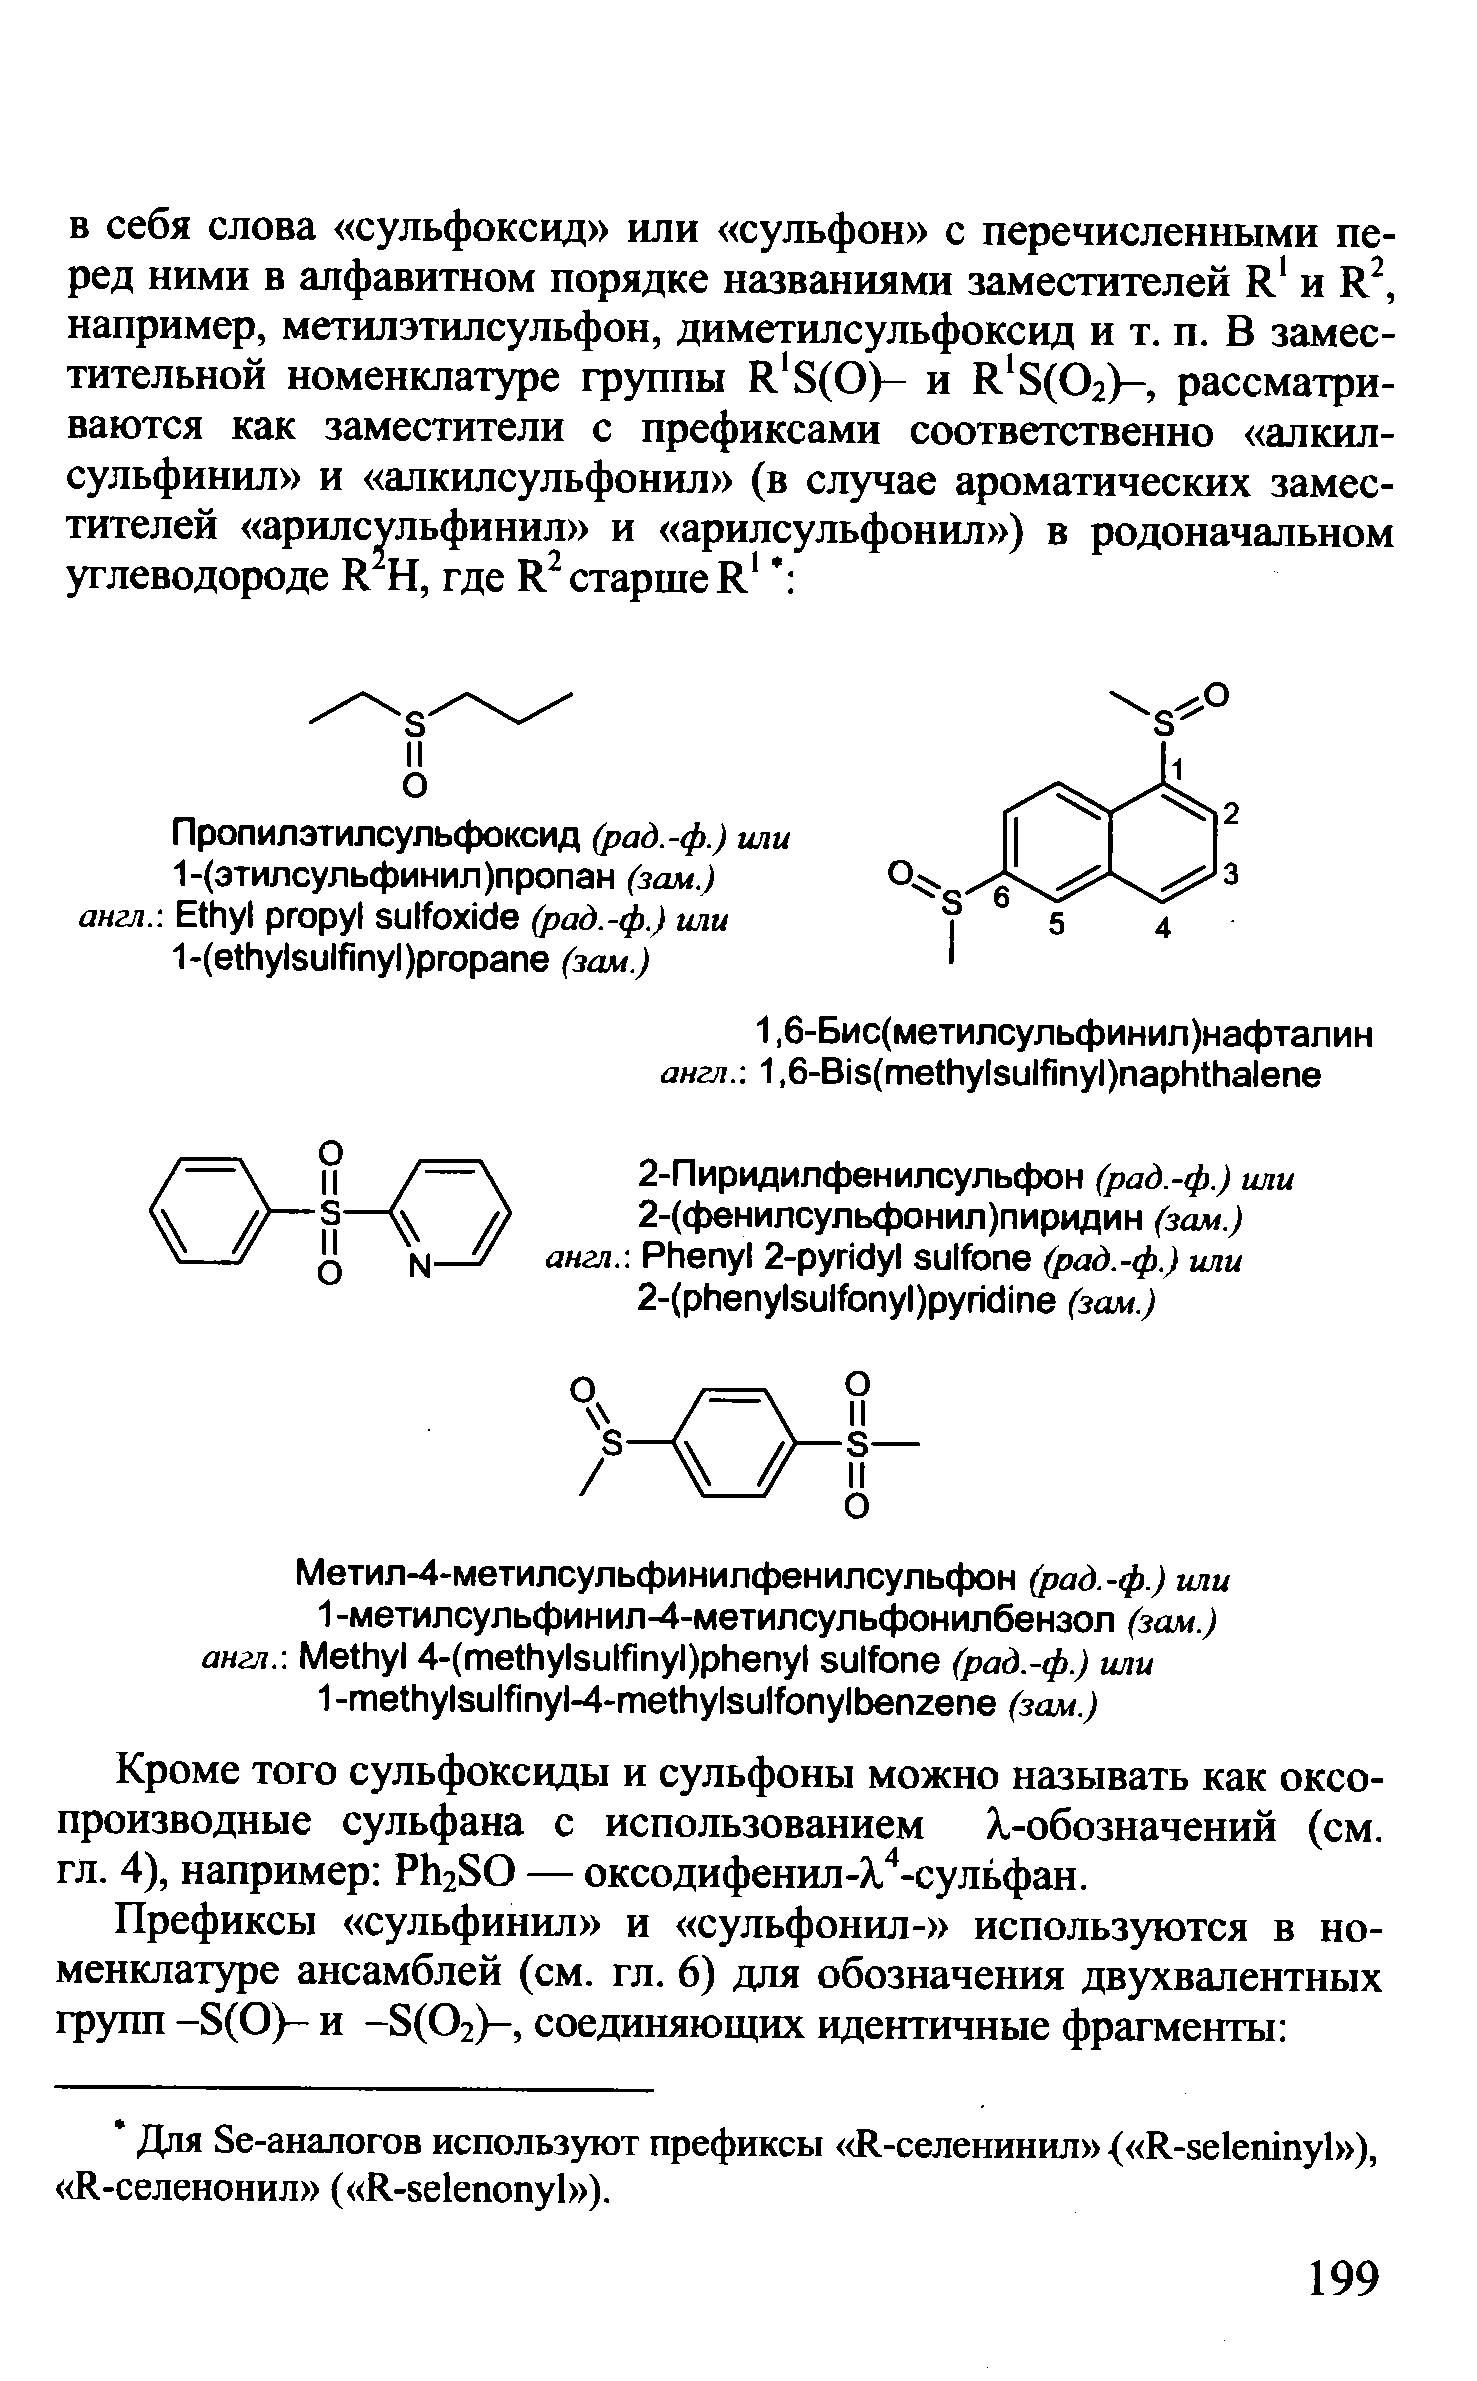 Кроме того сульфоксиды и сульфоны можно называть как оксо-производные сульфана с использованием .-обозначений (см. гл. 4), например РЬгЗО — оксодифенил-Х. -сульфан.